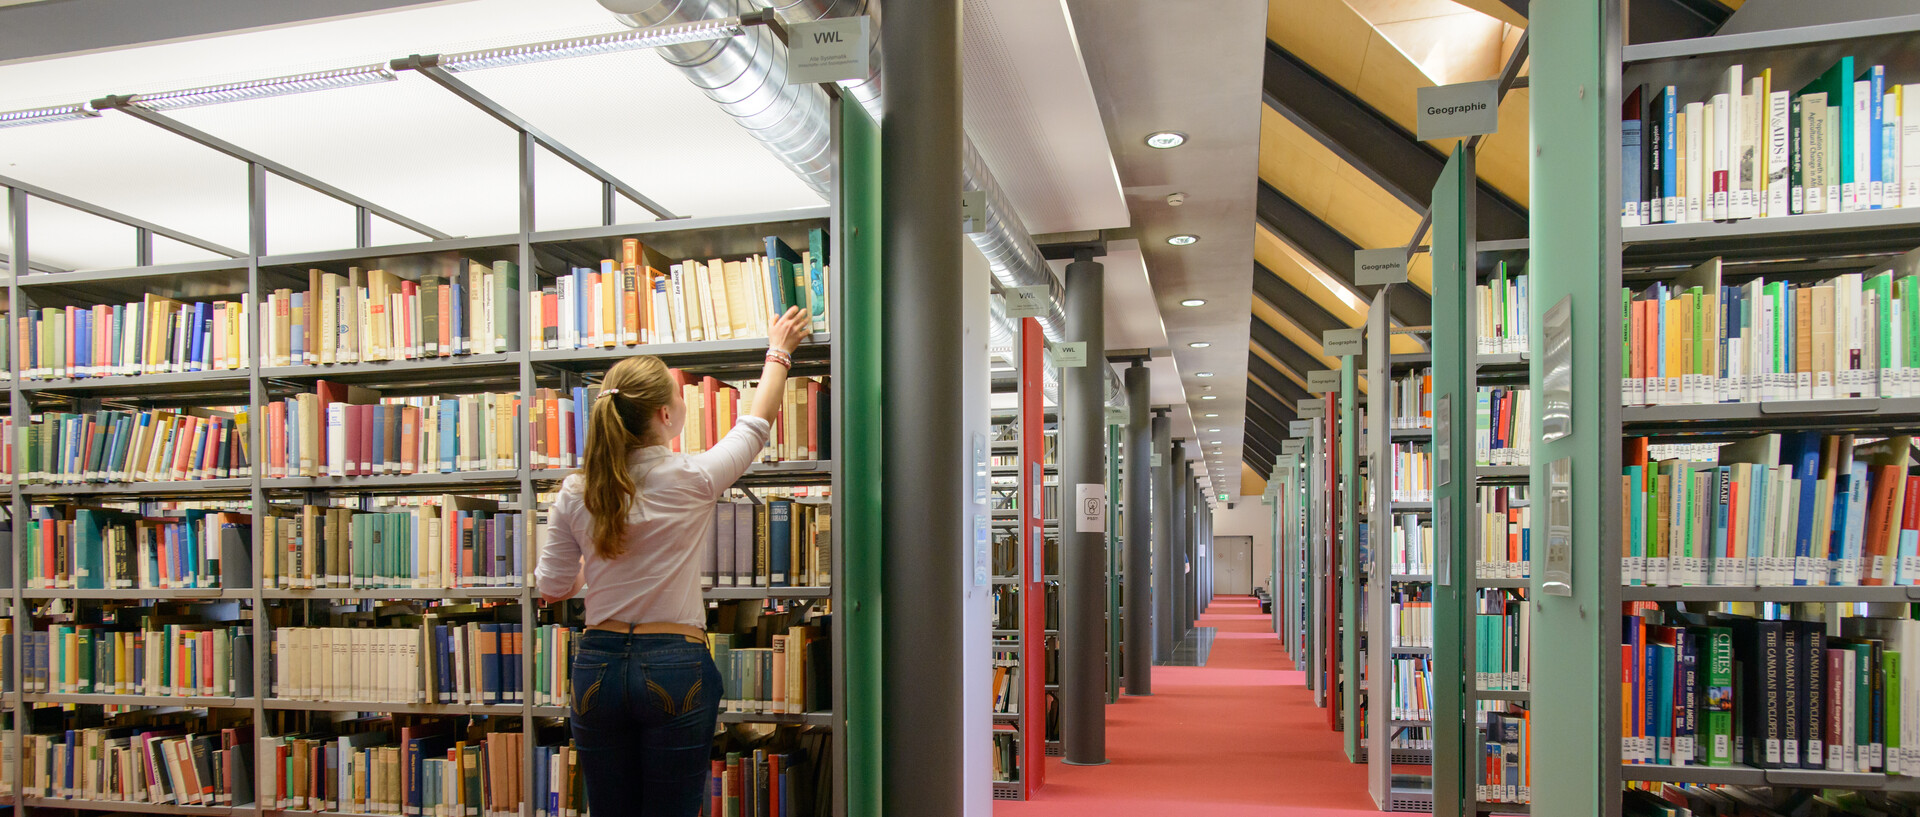 Bibliothek mit rotem Teppich und Bücherregalen, eine Studentin holt ein Buch aus einem Regal